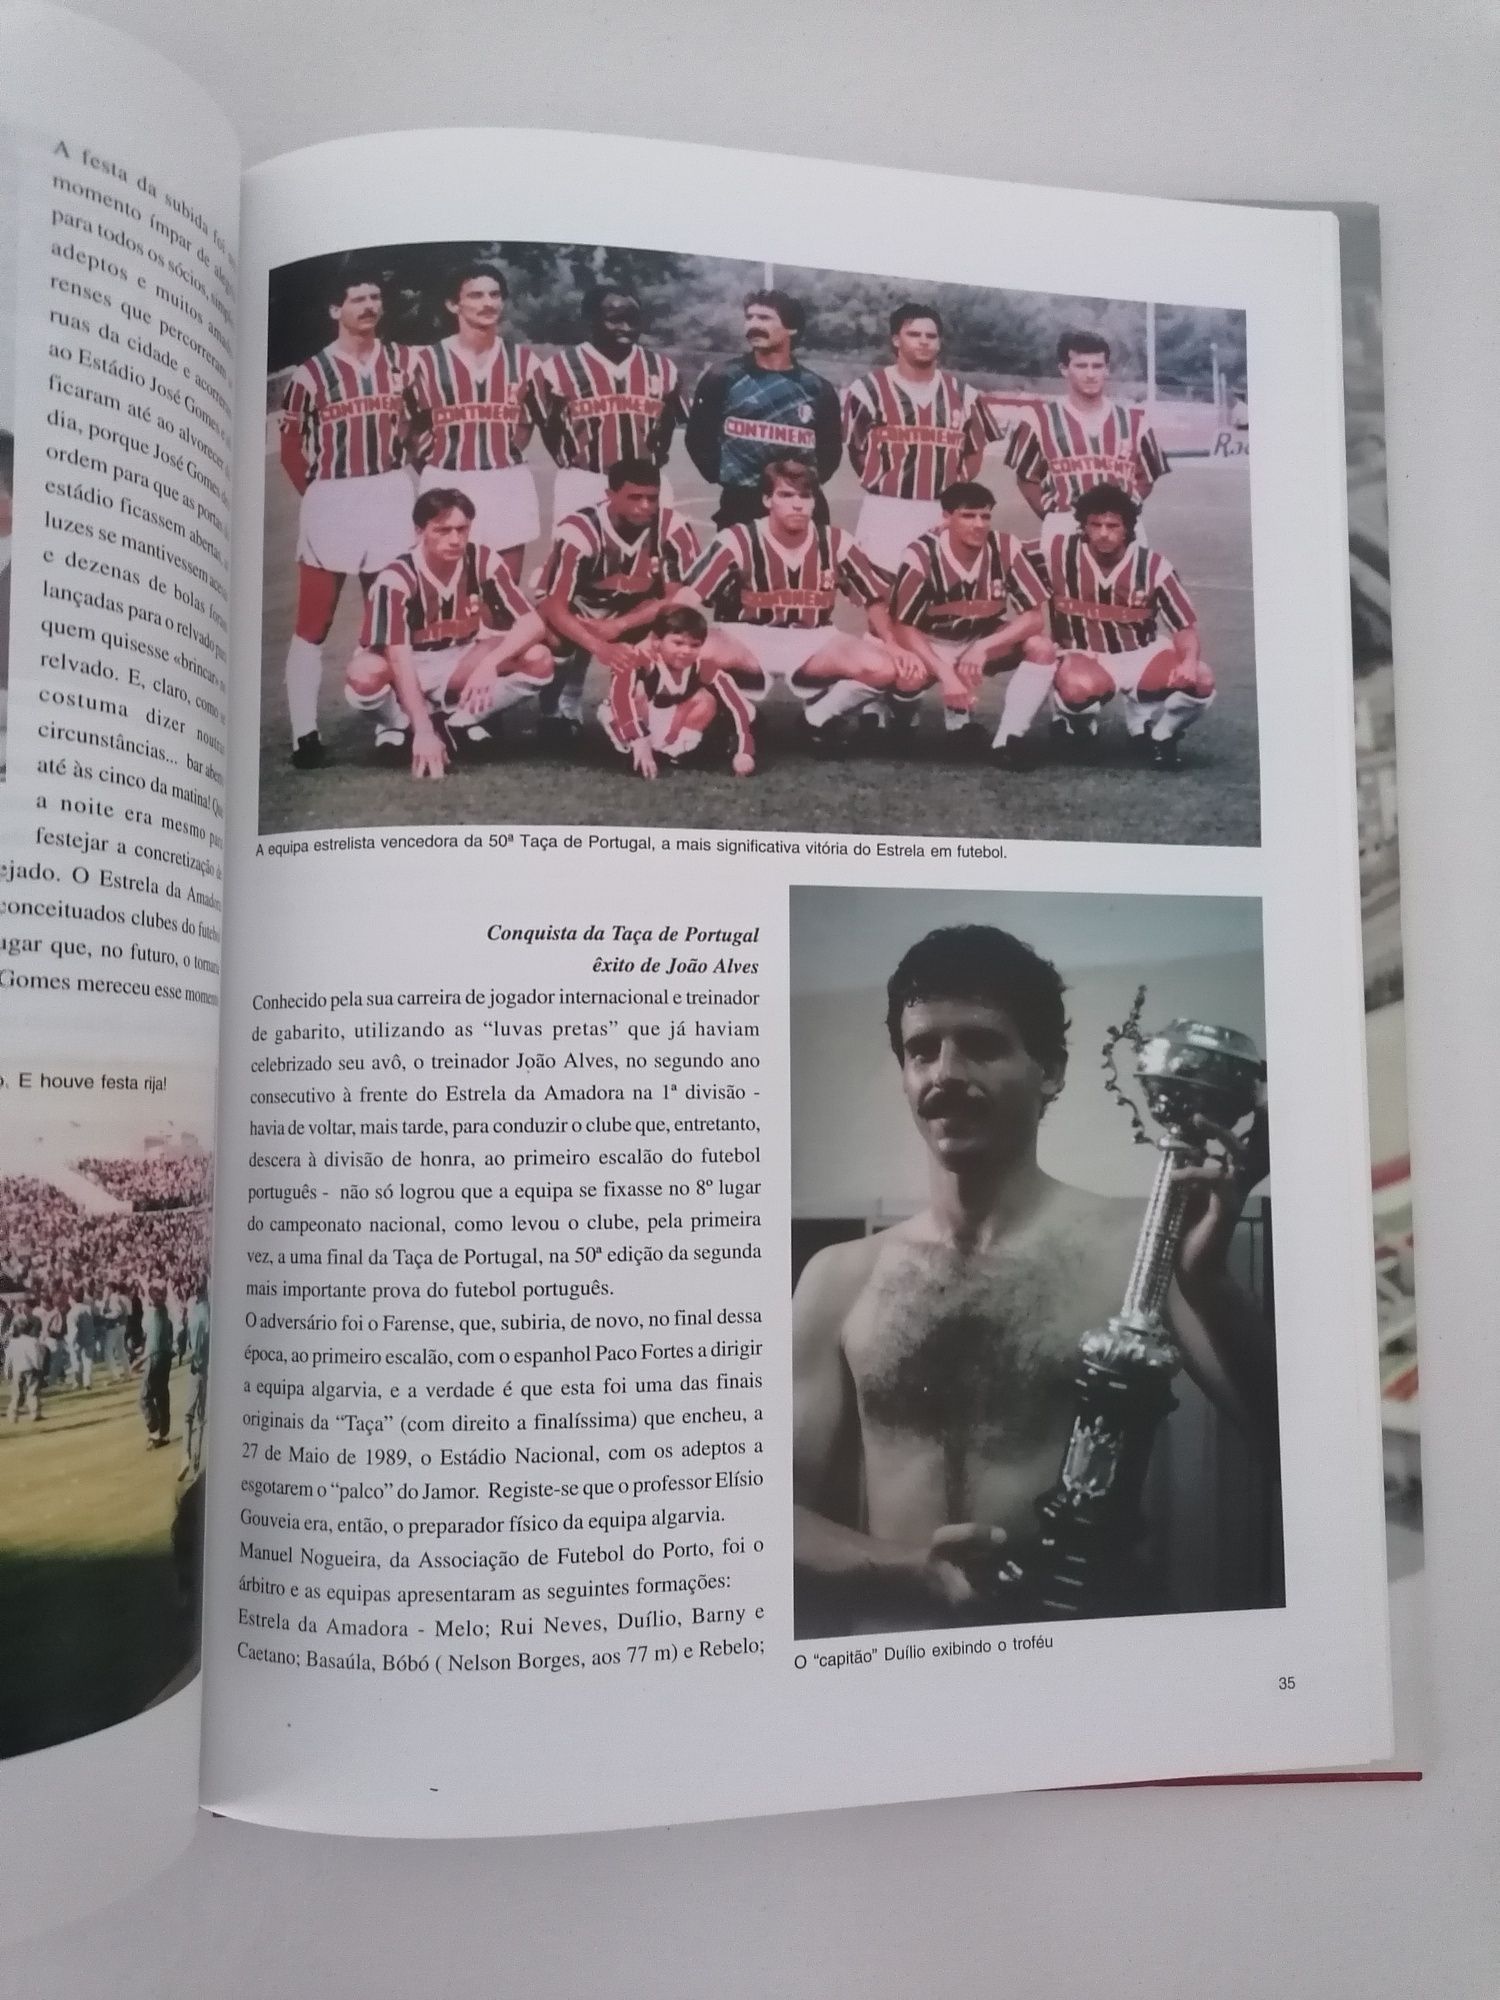 Livro do Clube de Futebol Estrela da Amadora 1932 a 2000